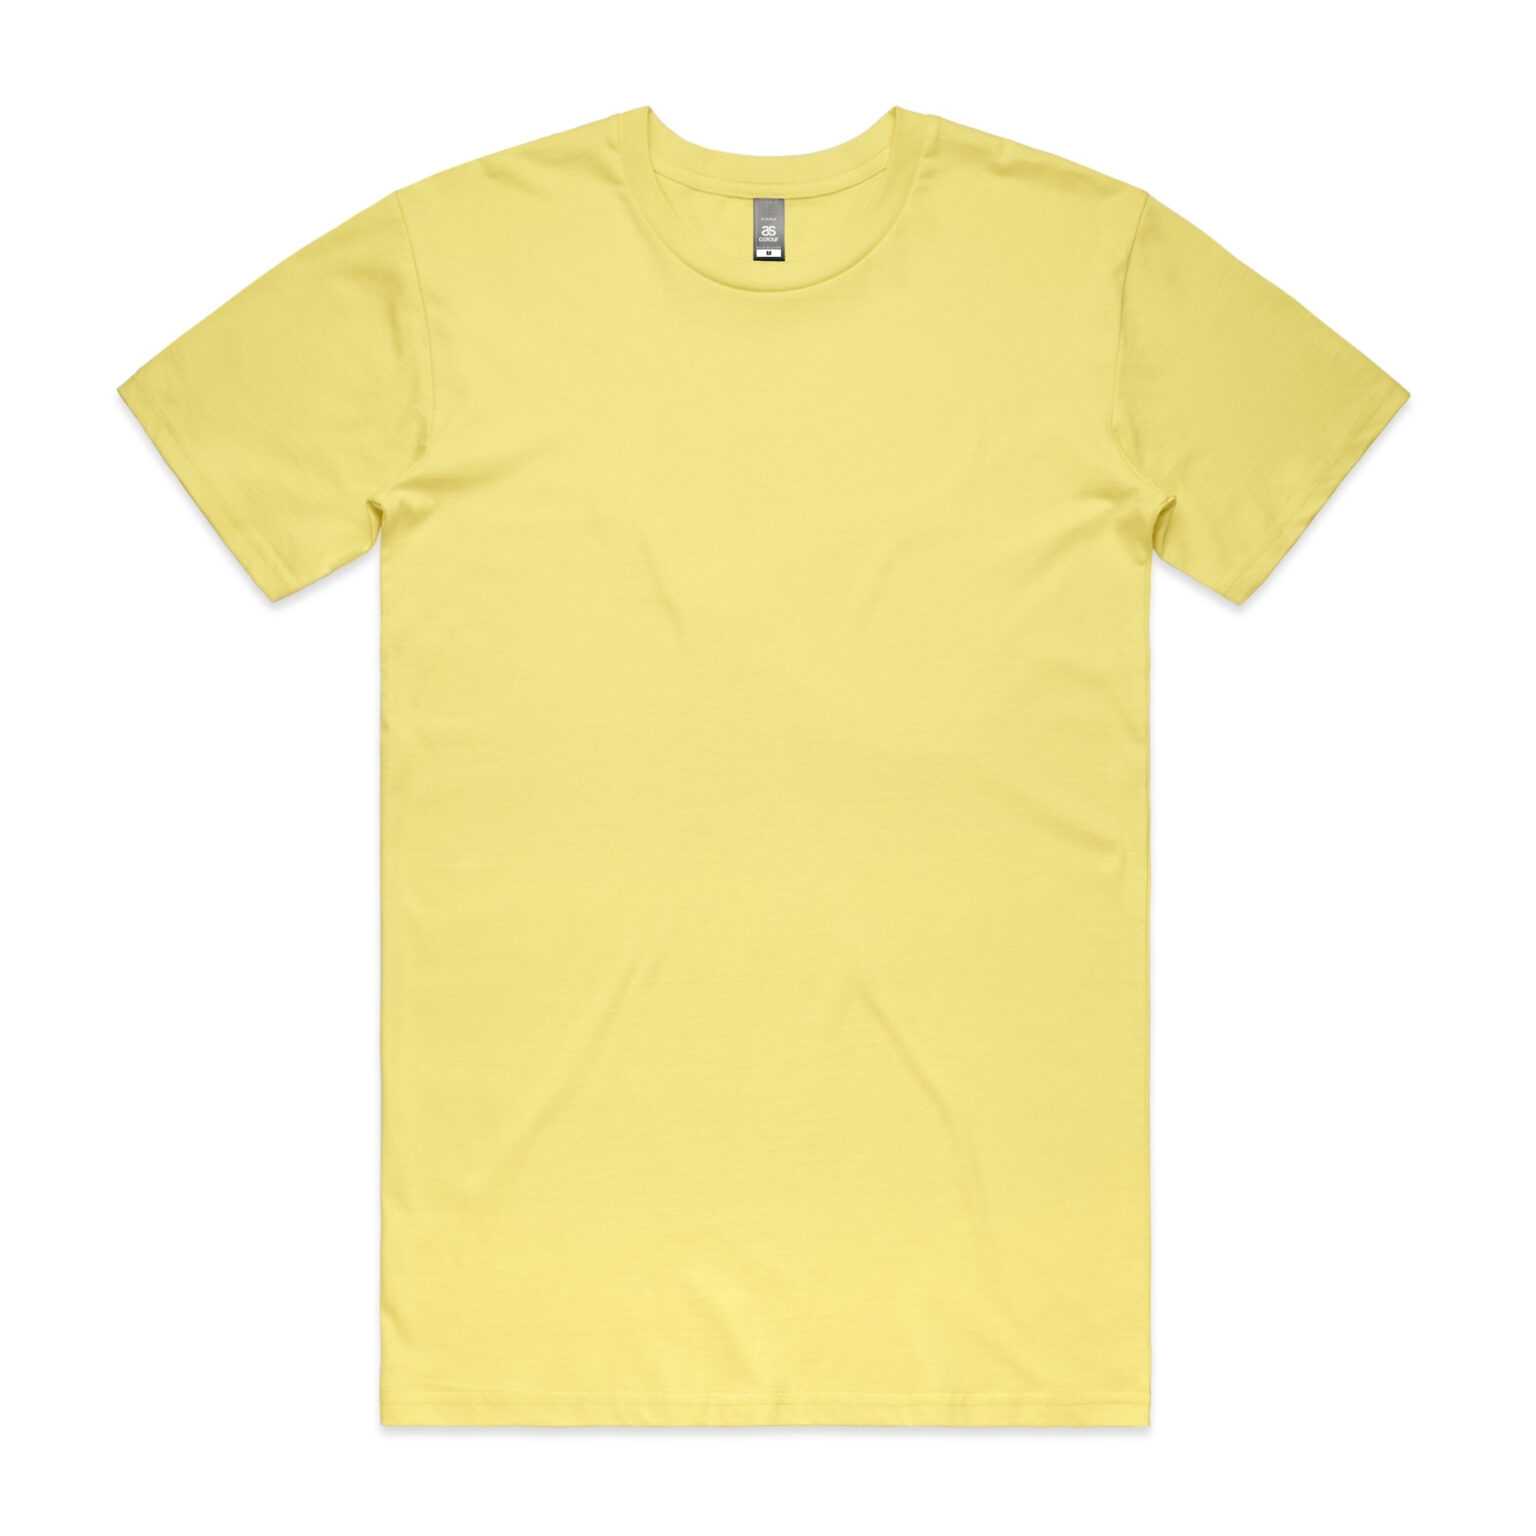 Printable Blank Tshirt Template – Nils Stucki Kieferorthopäde With ...